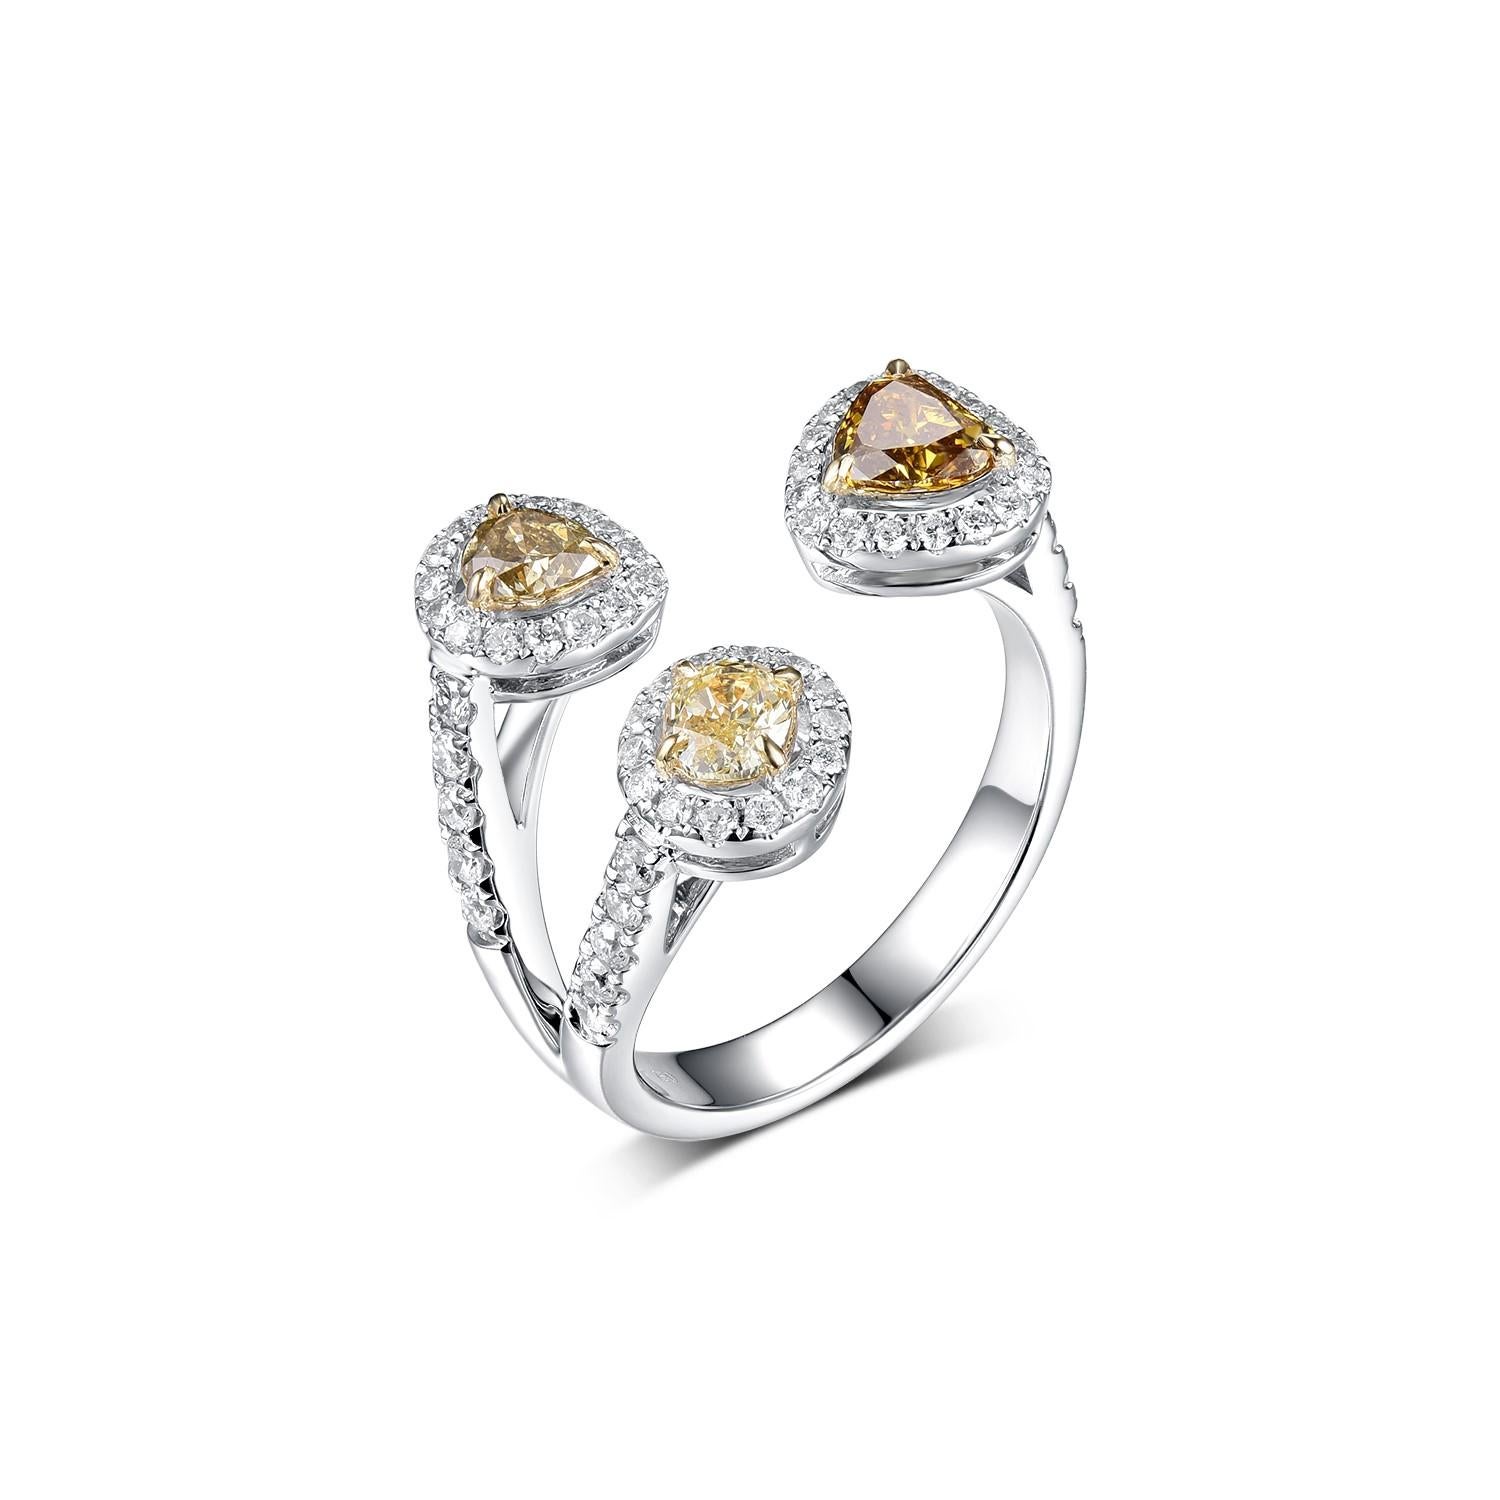 Cette bague présente 0,81 carat de diamants jaunes fantaisie et 0,47 carat de diamants ronds sertis dans un design en pont. Les diamants sont sertis dans de l'or blanc 18 carats et le corps de la bague est réalisé en or blanc et rose 18 carats. Le